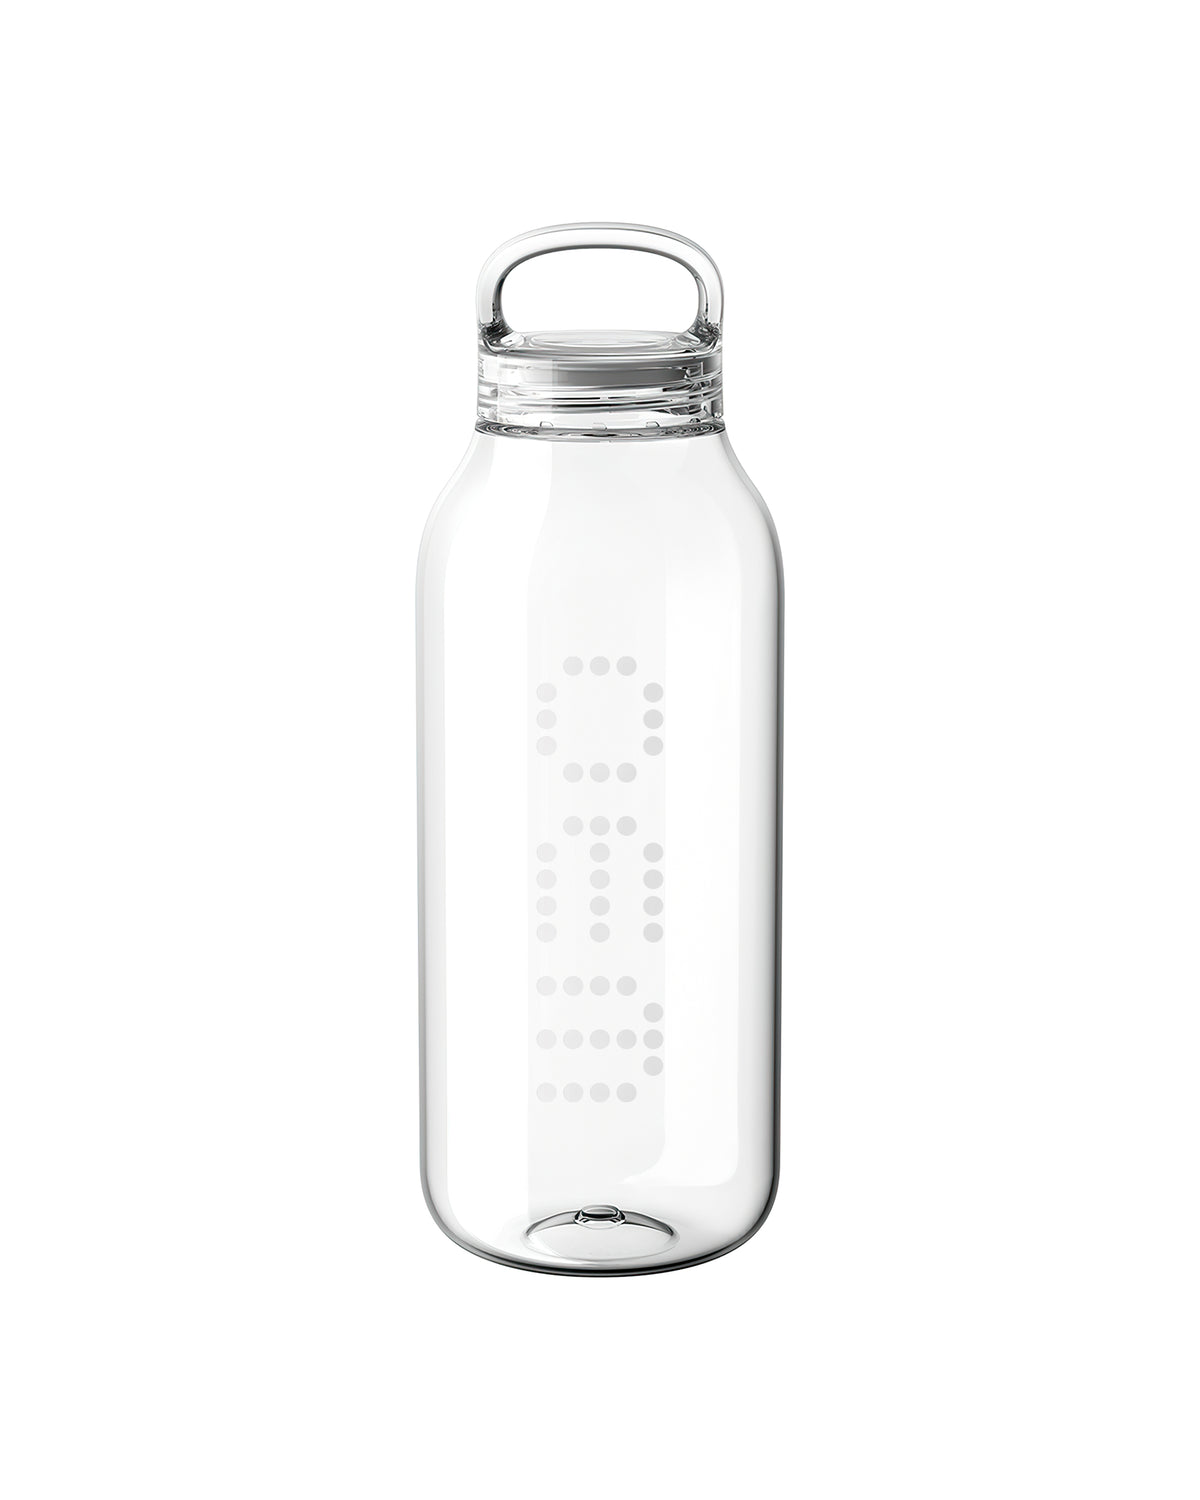 32oz Clear Glass Bar Mixer Bottle